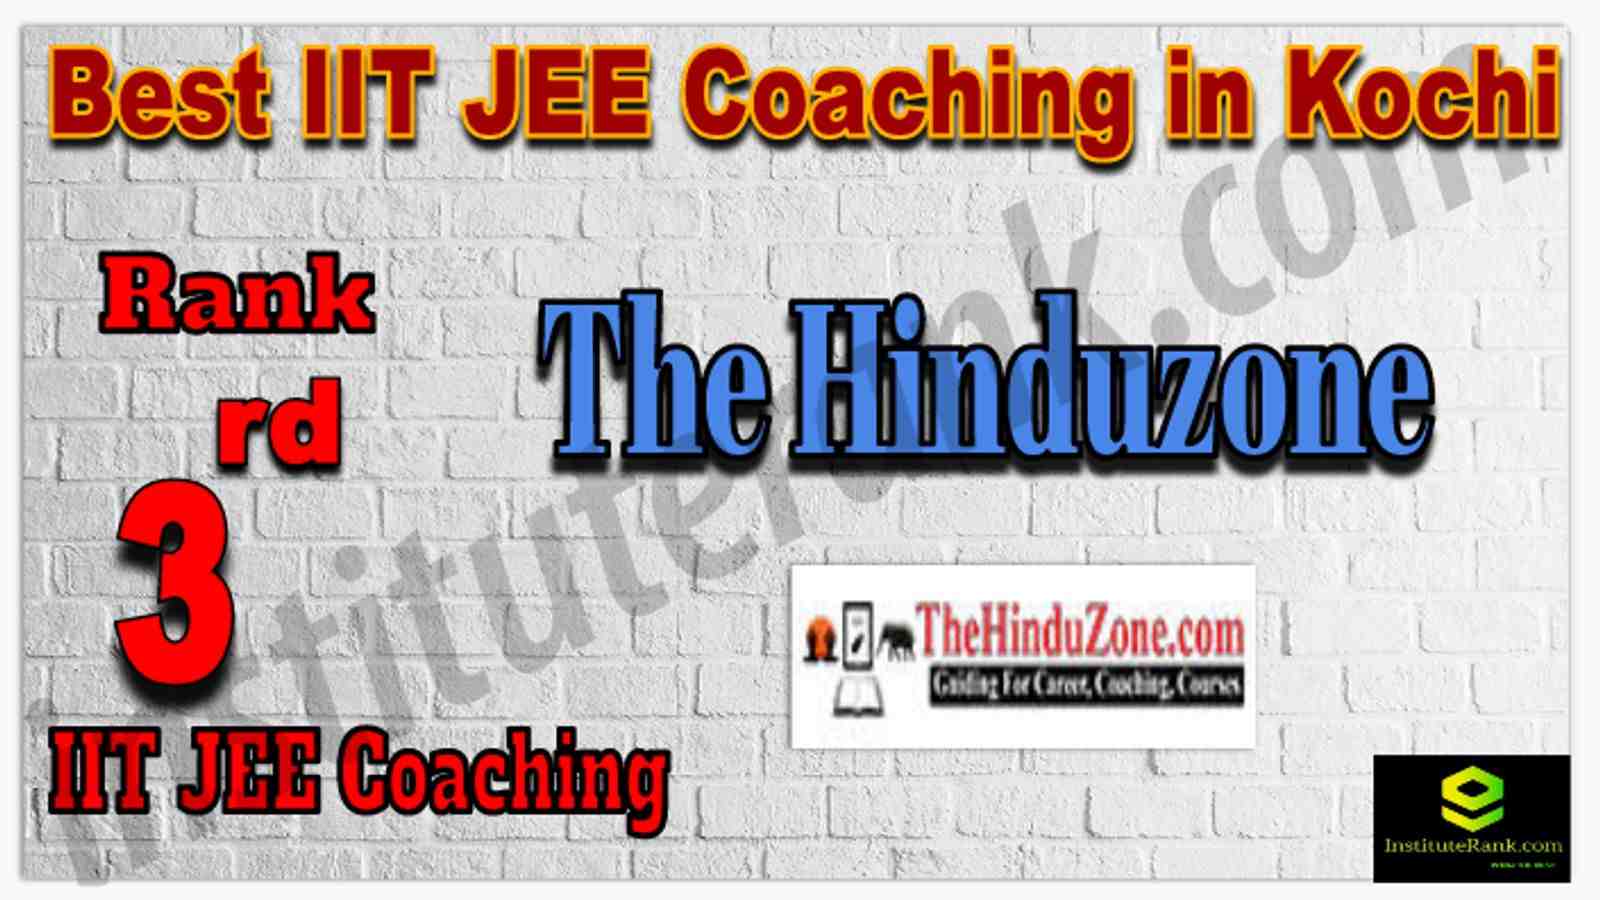 Rank 3rd Best IIT JEE Coaching in Kochi